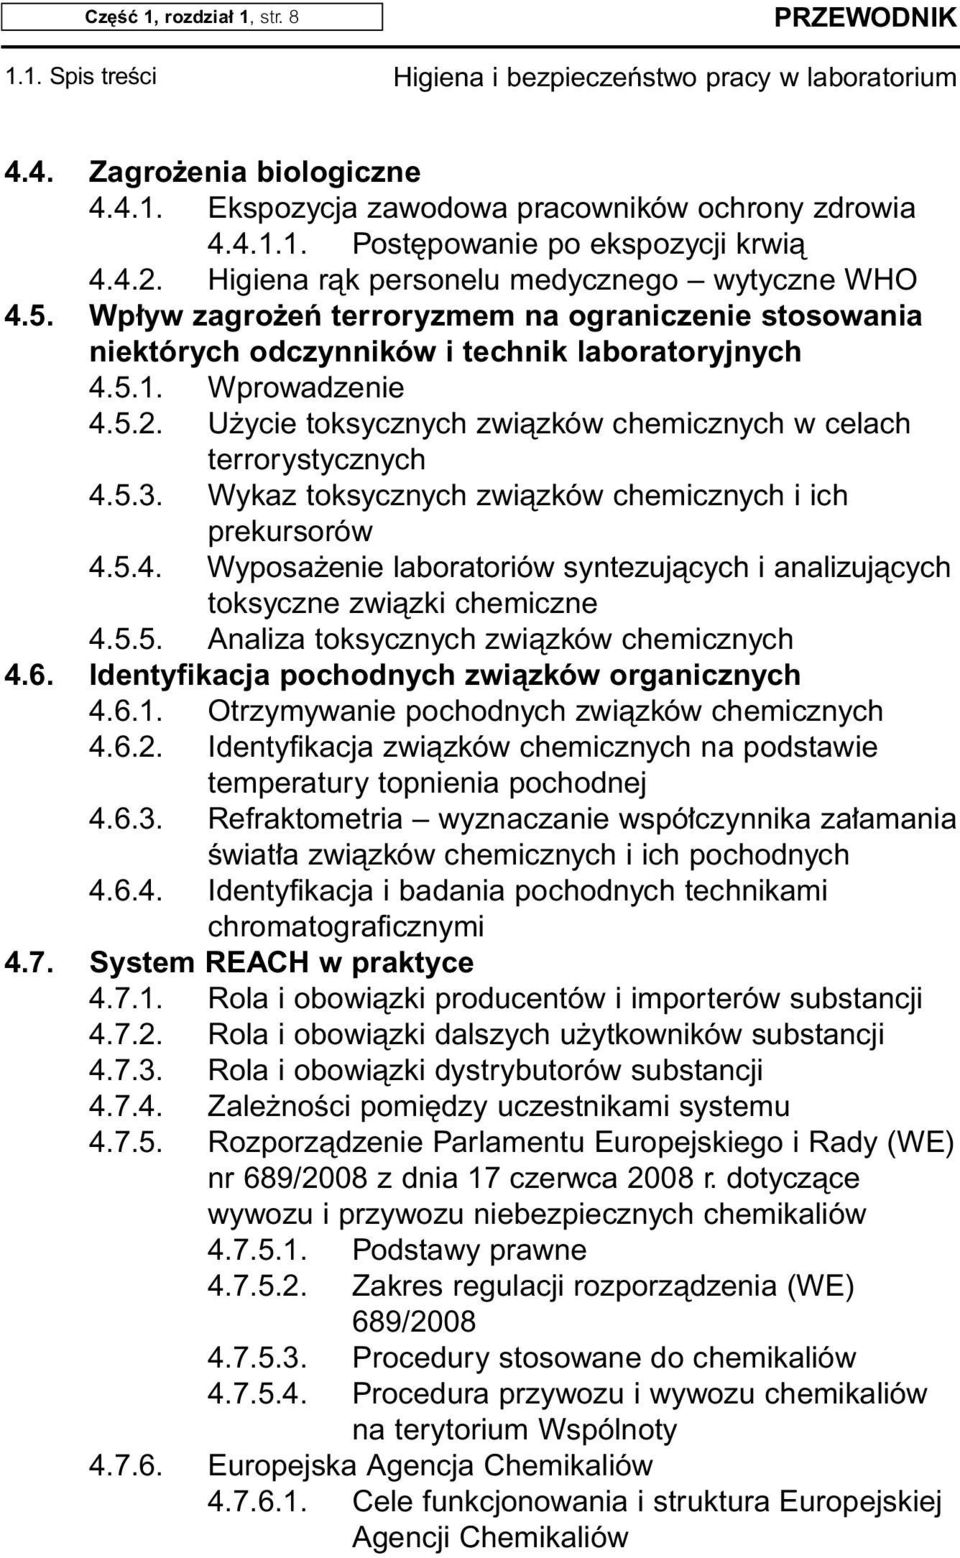 U ycie toksycznych zwiàzków chemicznych w celach terrorystycznych 4.5.3. Wykaz toksycznych zwiàzków chemicznych i ich prekursorów 4.5.4. Wyposa enie laboratoriów syntezujàcych i analizujàcych toksyczne zwiàzki chemiczne 4.